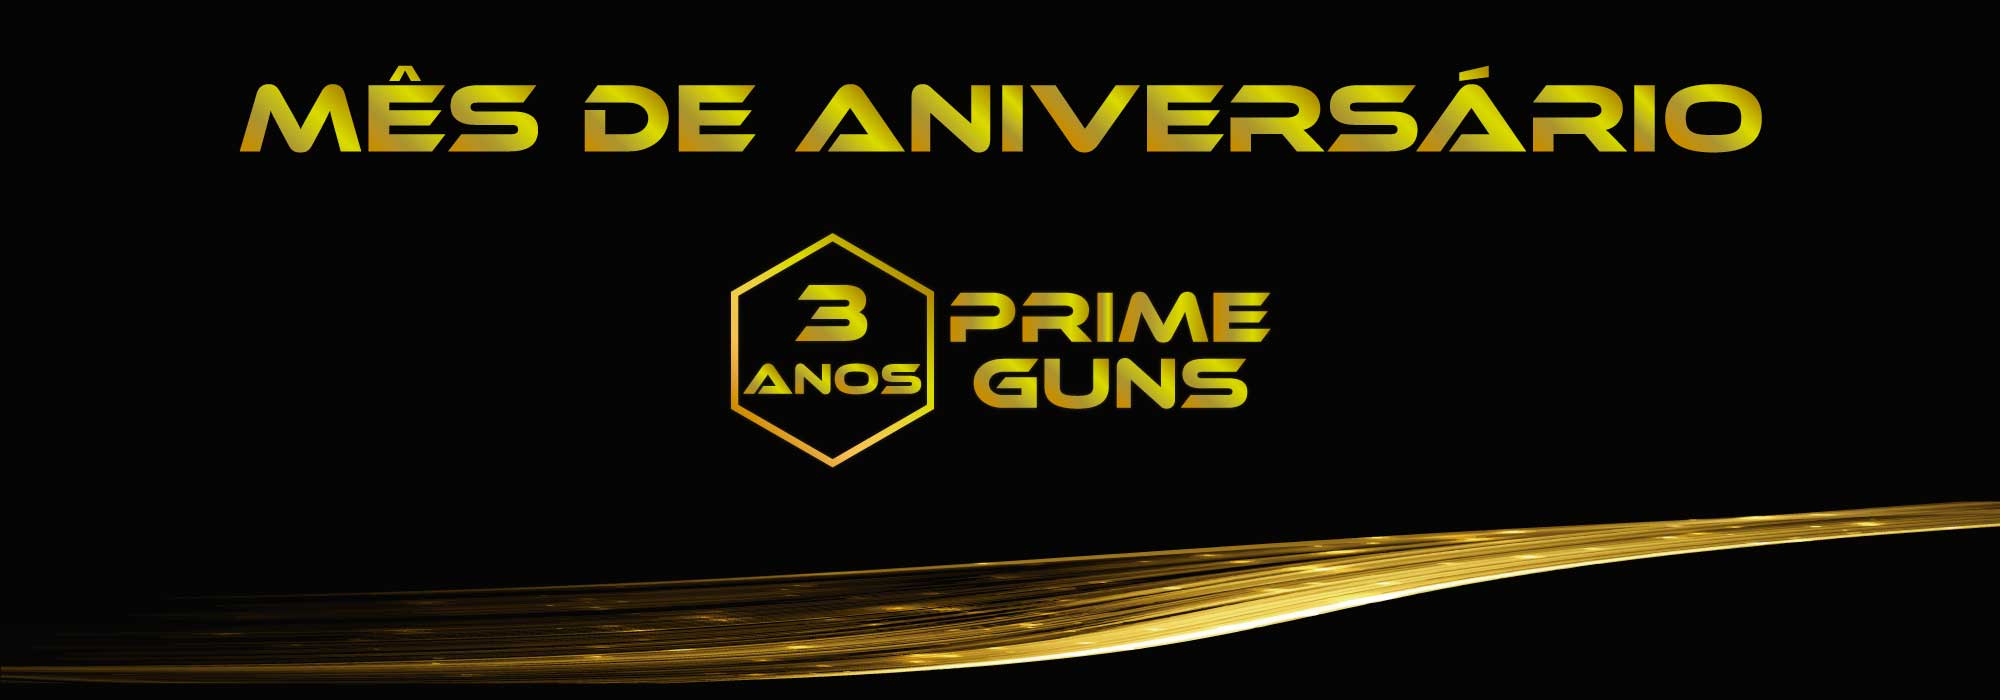 mes-de-aniversario-prime-guns